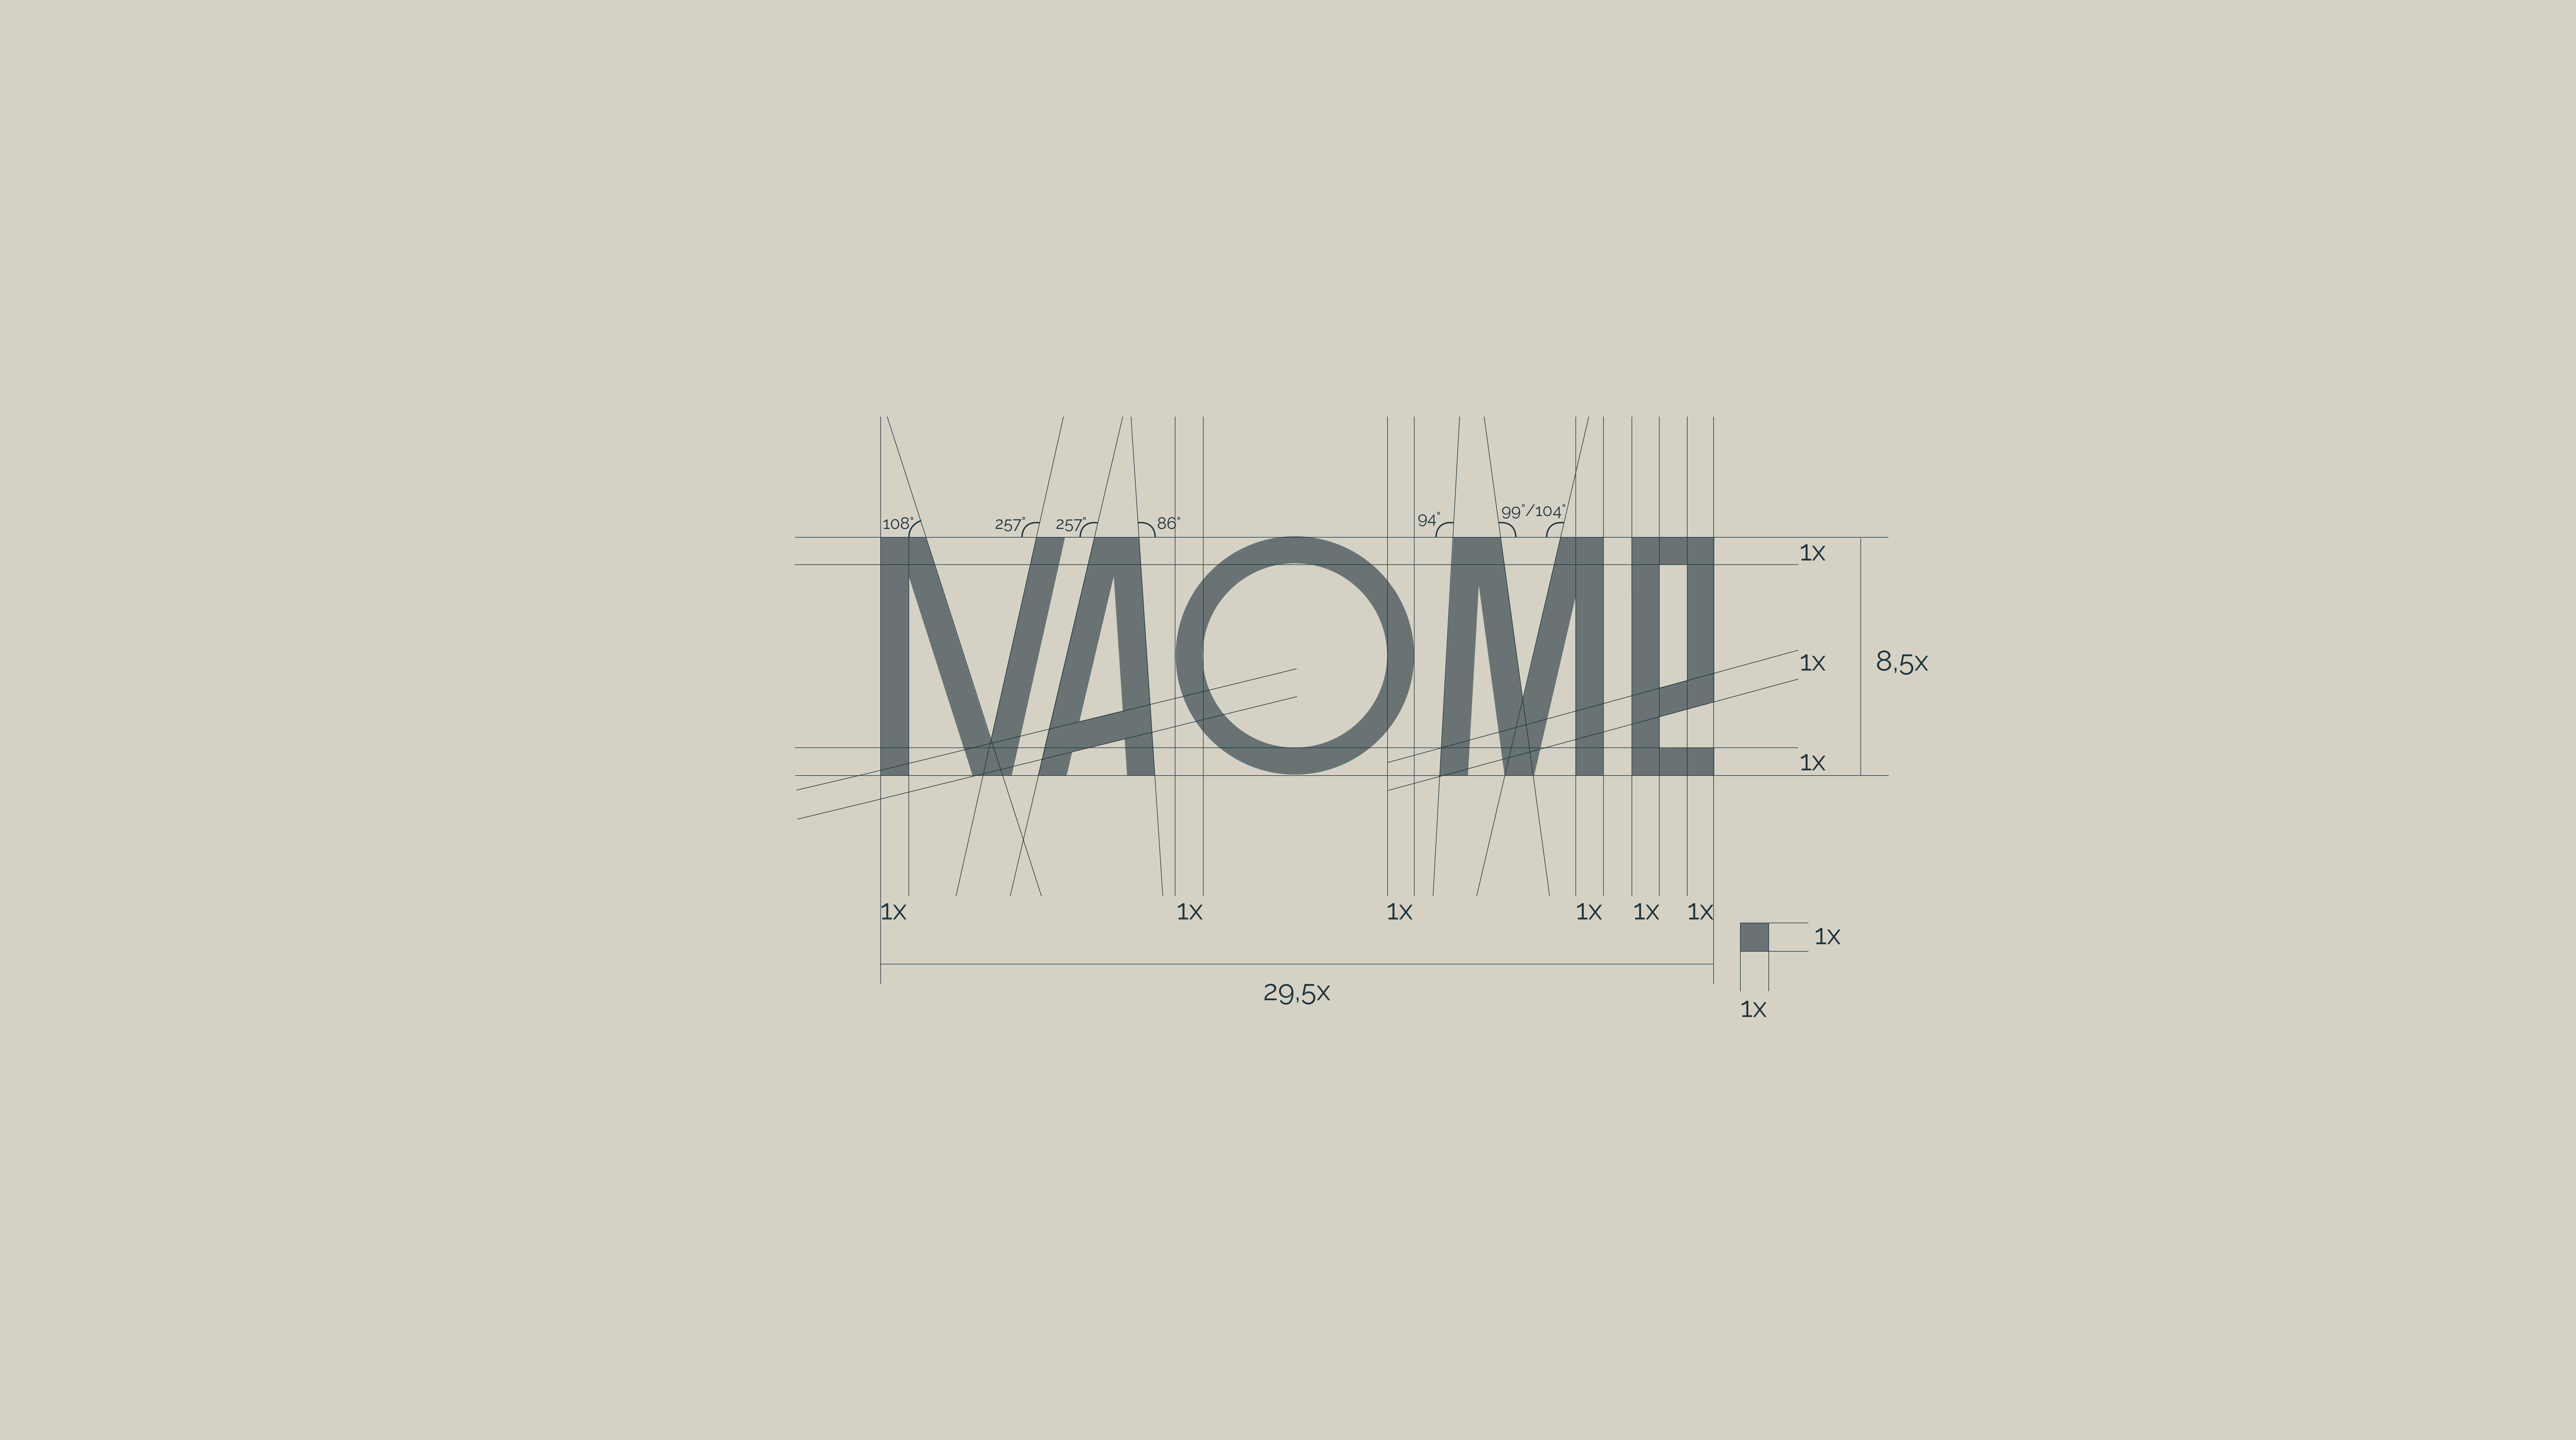 Фото №5: Naome - производитель натурального текстиля для дома в США - Разработка логотипа и создание бренда в студии брендинга Rocketmen Agency